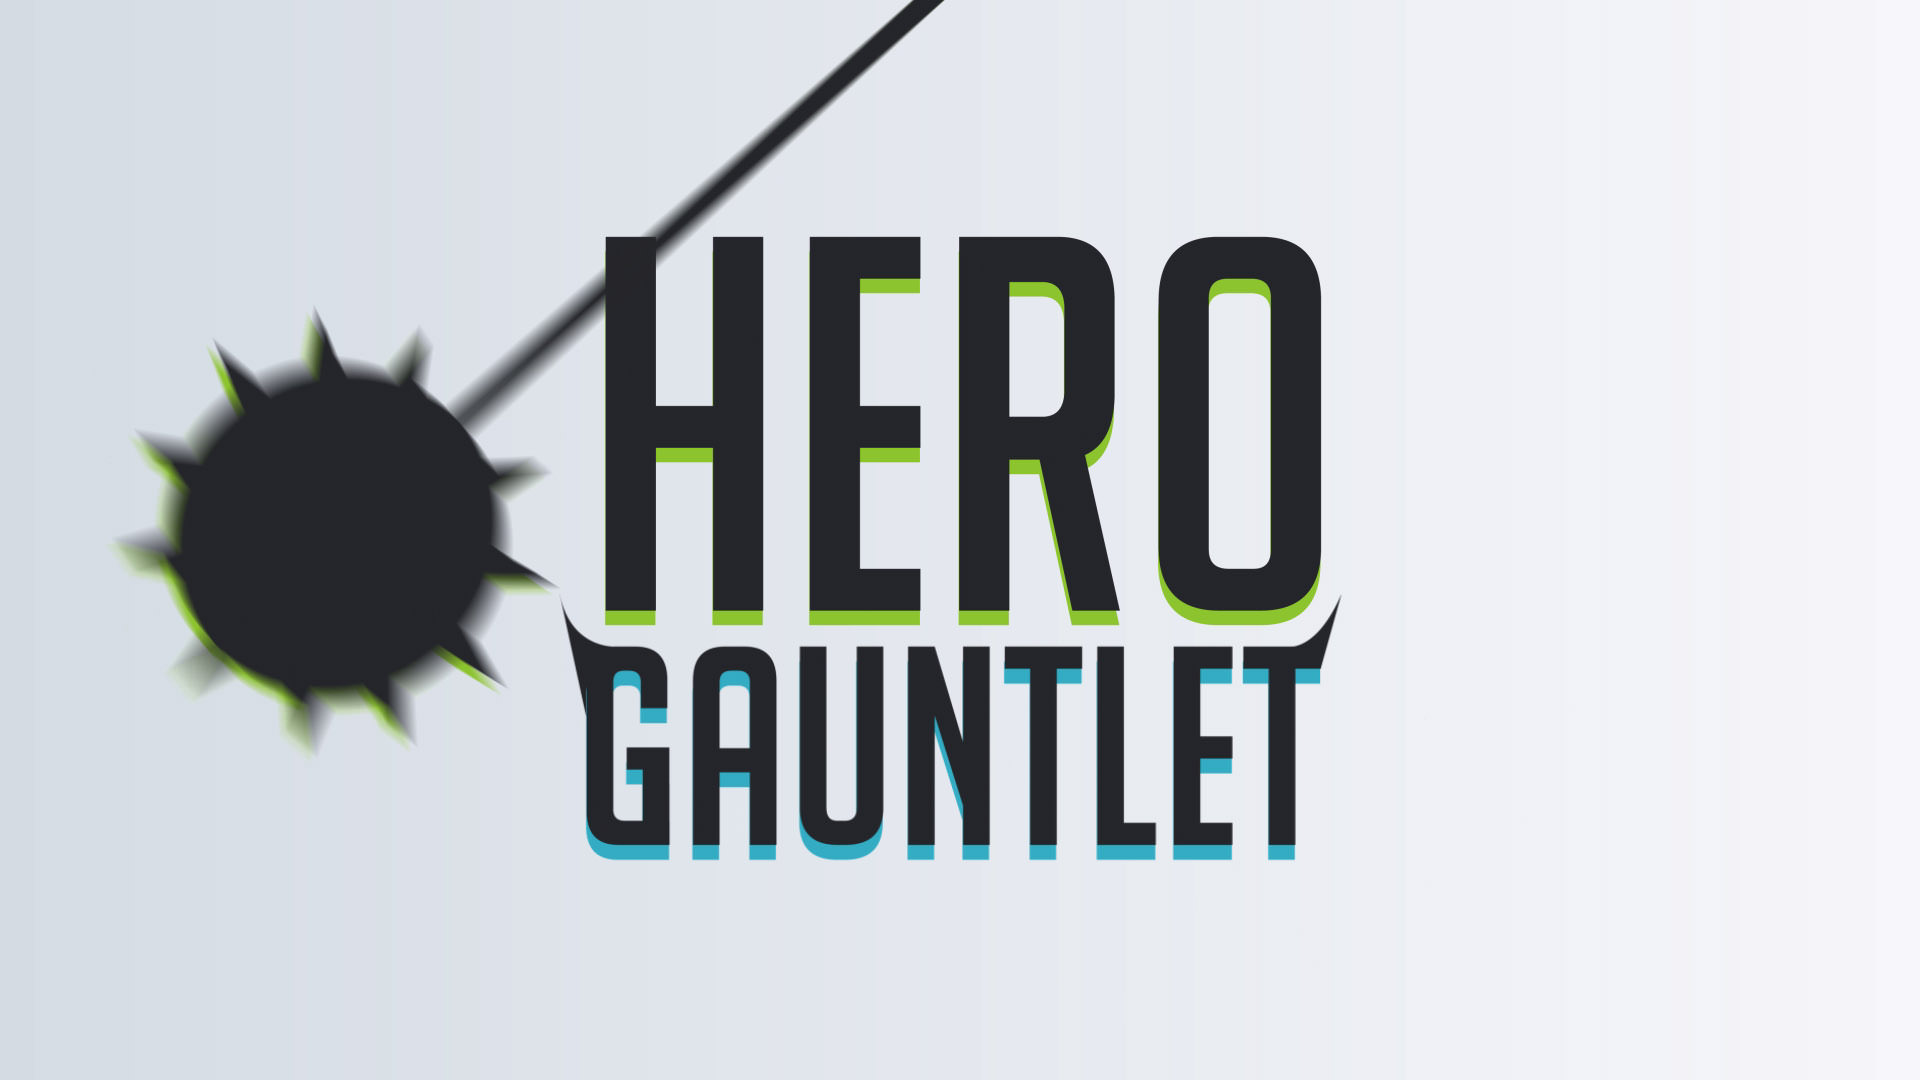 Gauntlet Hero Gauntlet Thumbnail